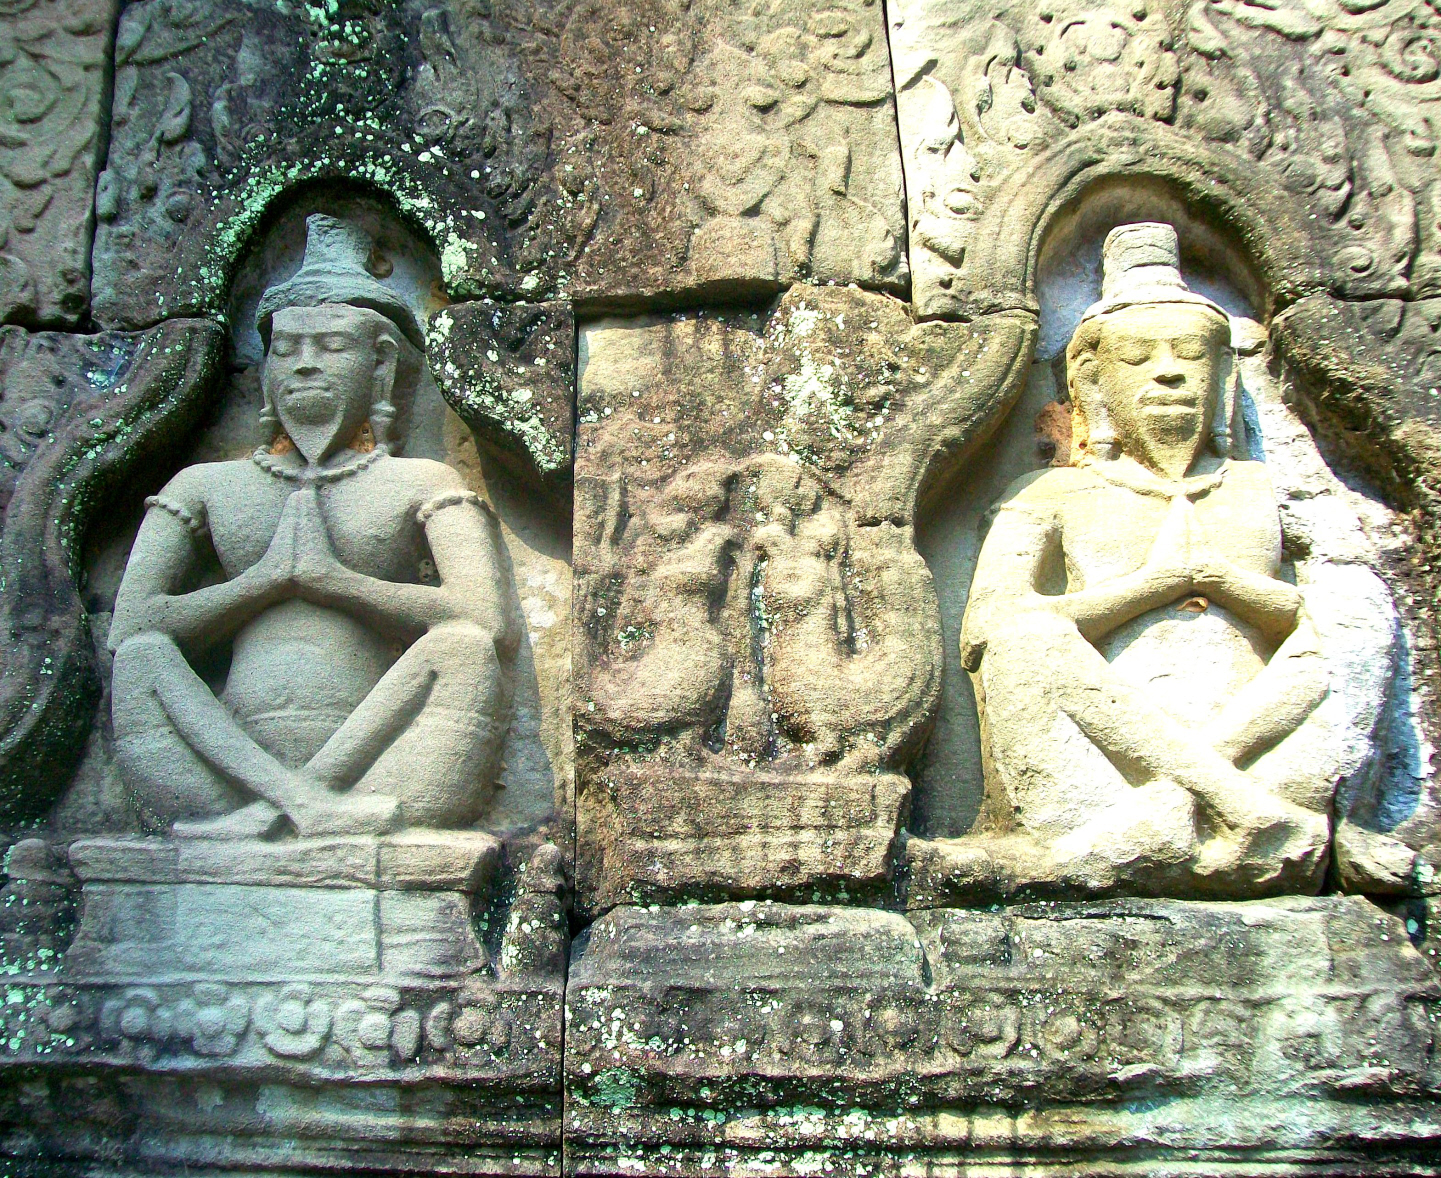 Preah Khan Temple/ Monastic Complex - Angkor Wat, Cambodia